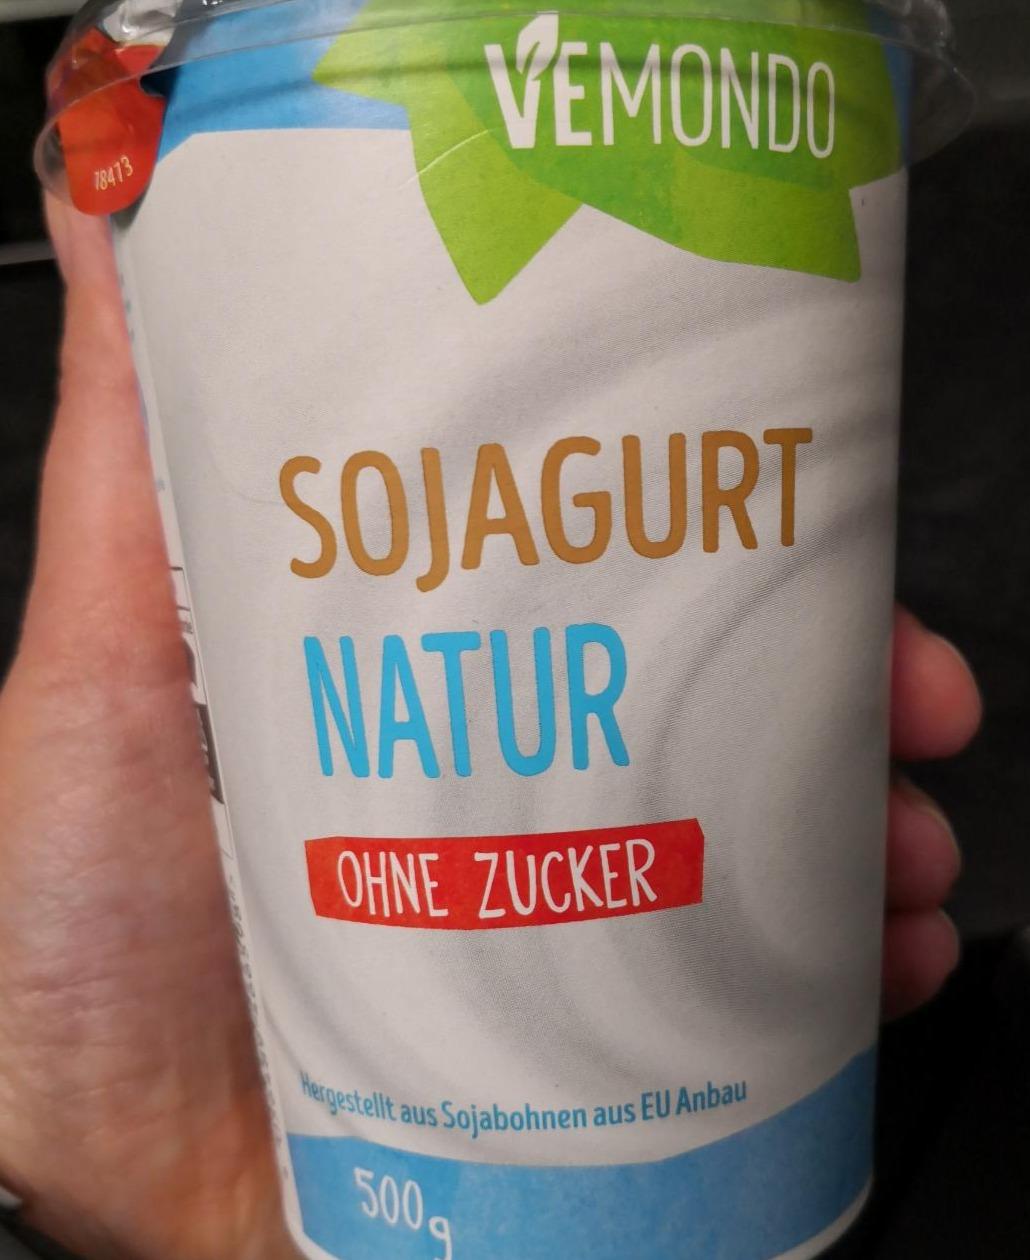 Sojagurt Natur ohne Zucker Vemondo - kalórie, kJ a nutričné hodnoty